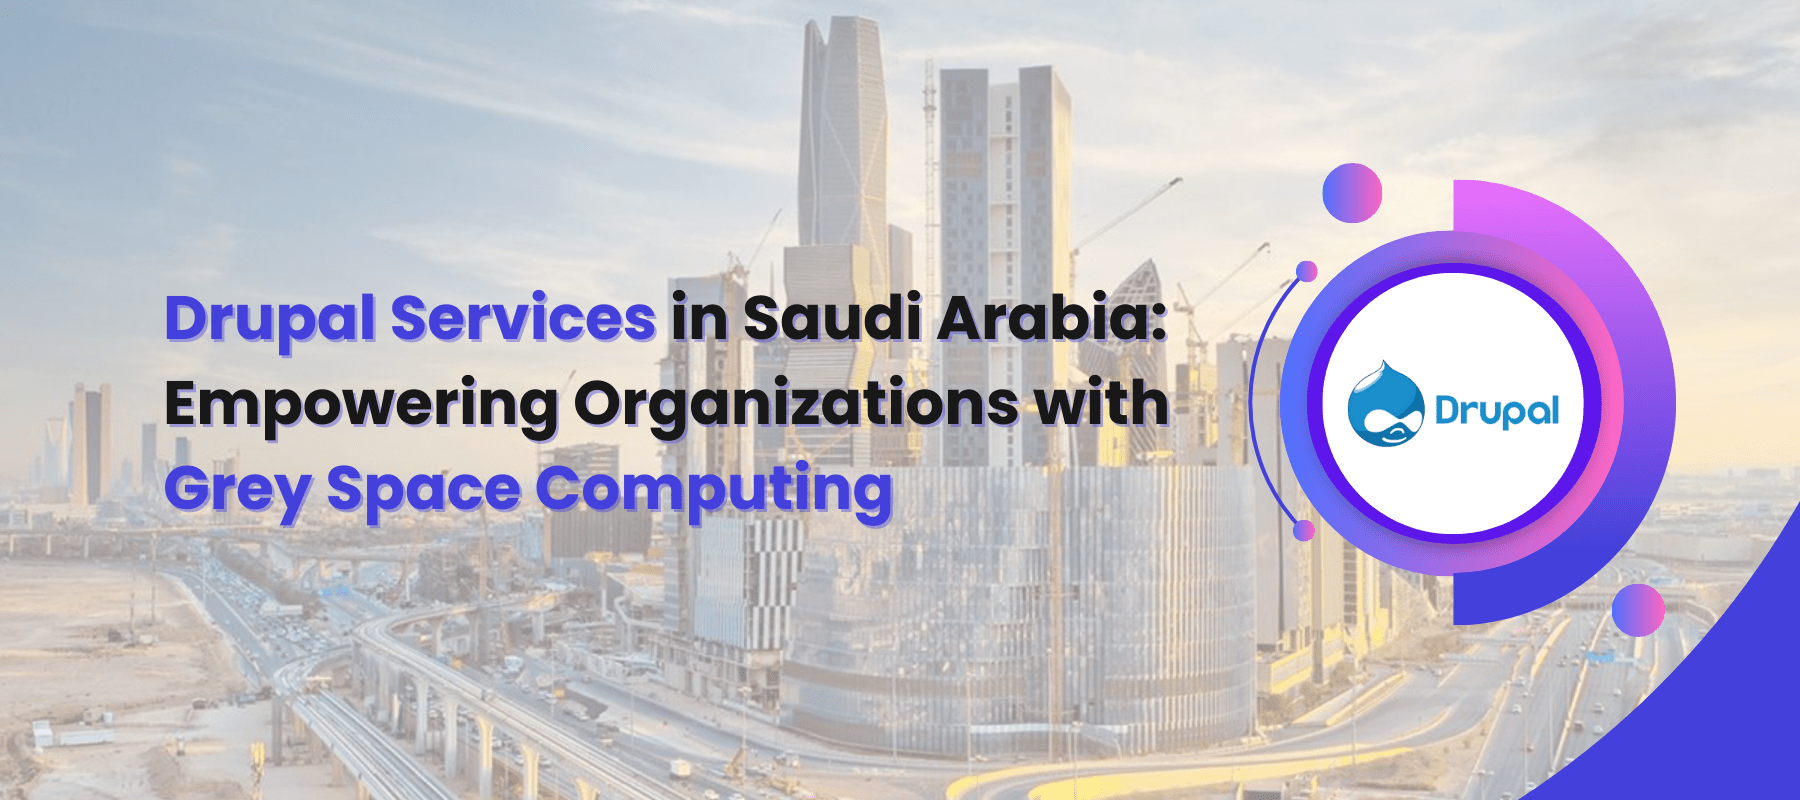 Drupal Services in Saudi Arabia